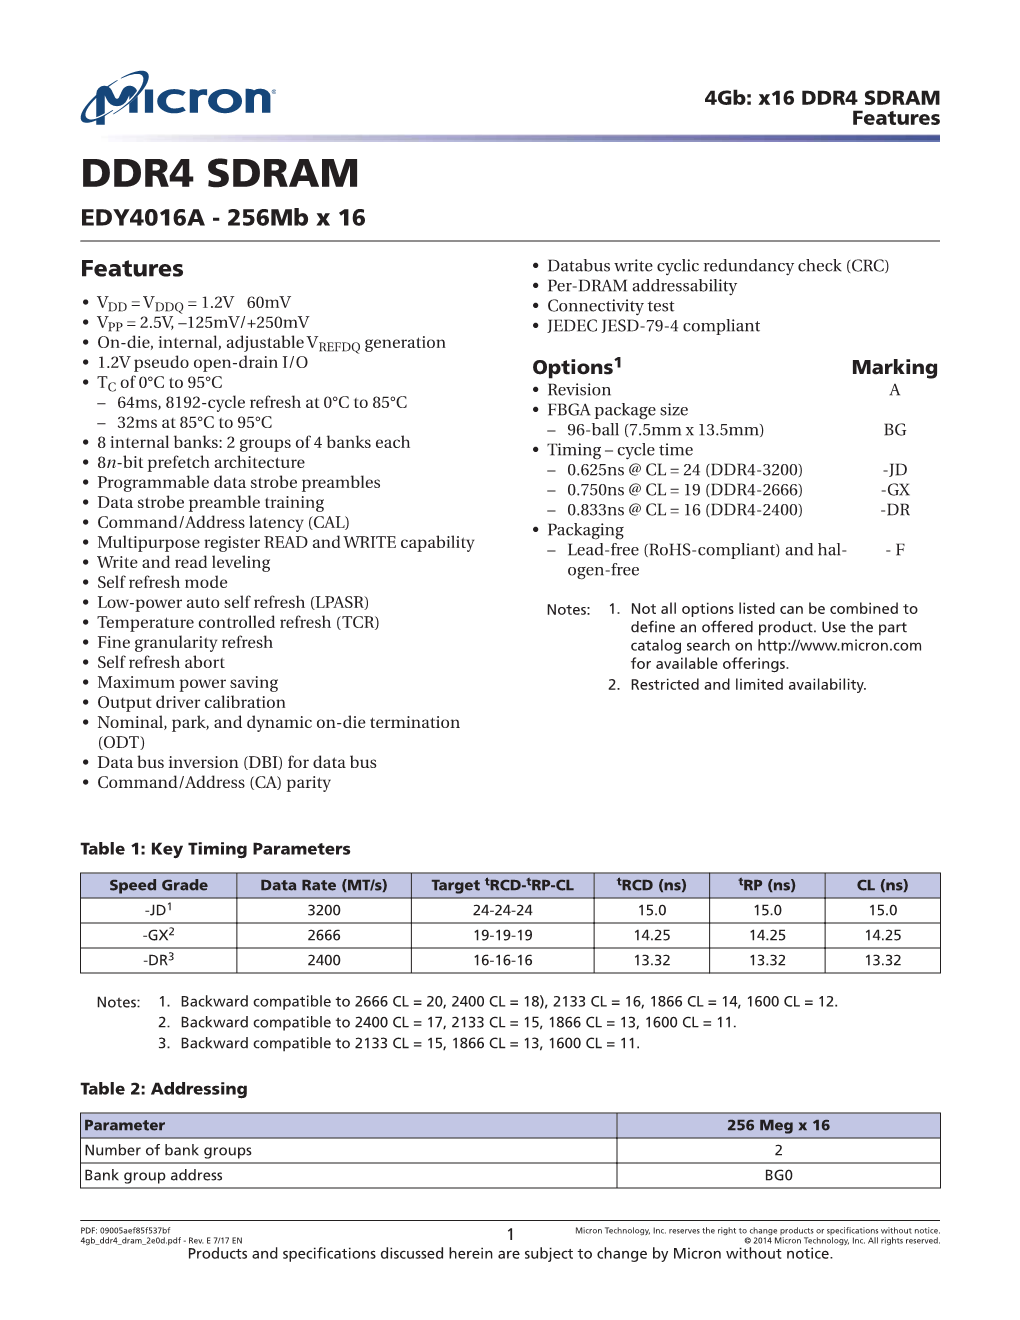 4Gb: X16 DDR4 SDRAM Features DDR4 SDRAM EDY4016A - 256Mb X 16